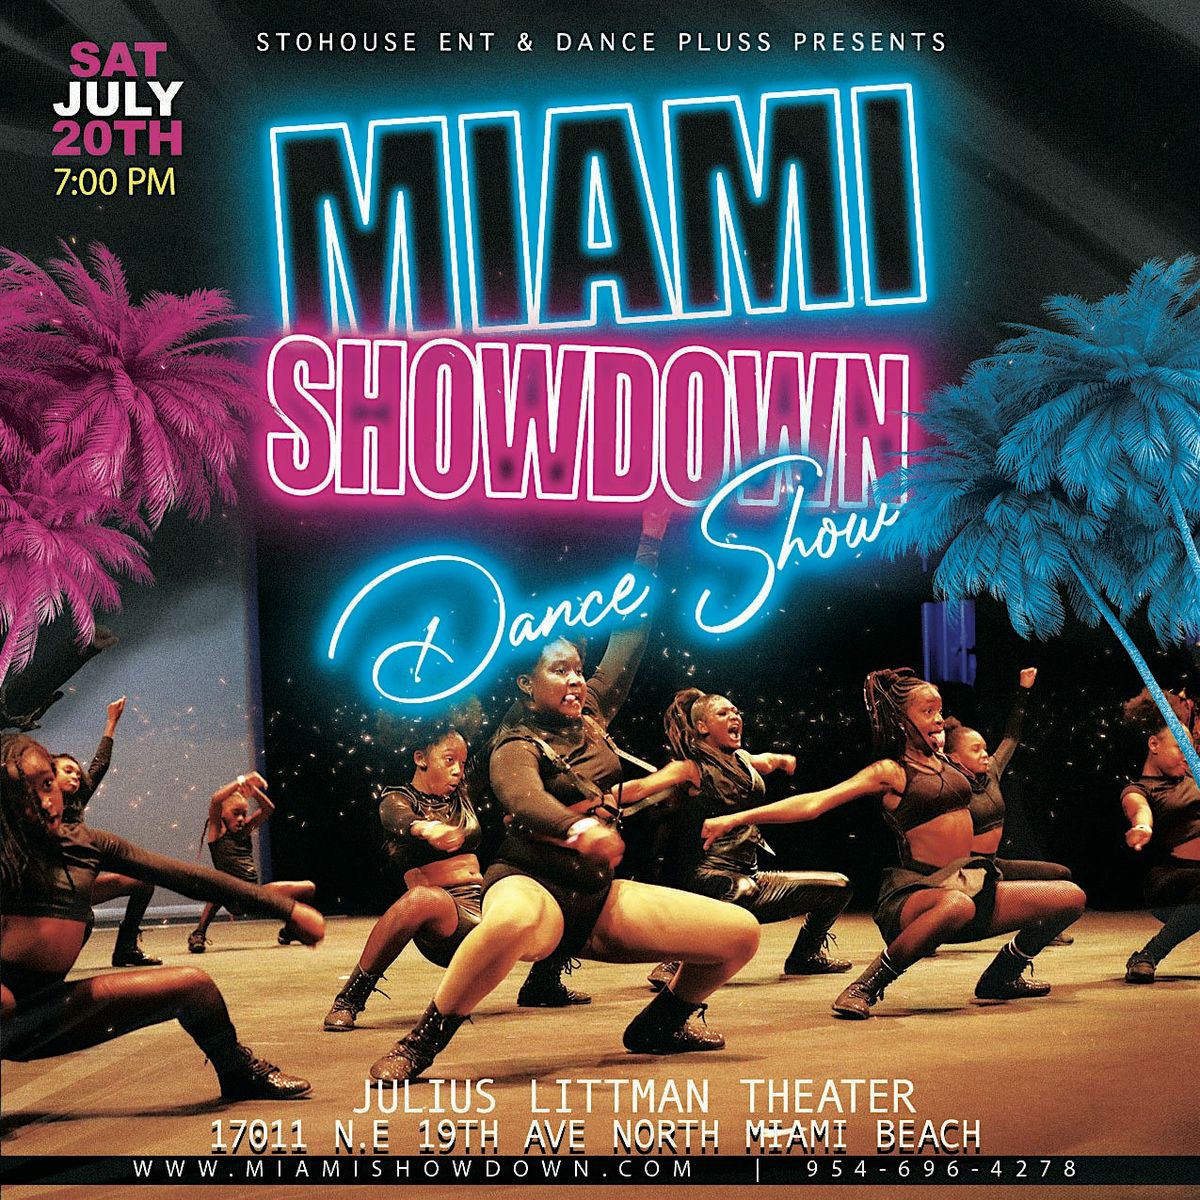 The Miami Showdown Dance Show